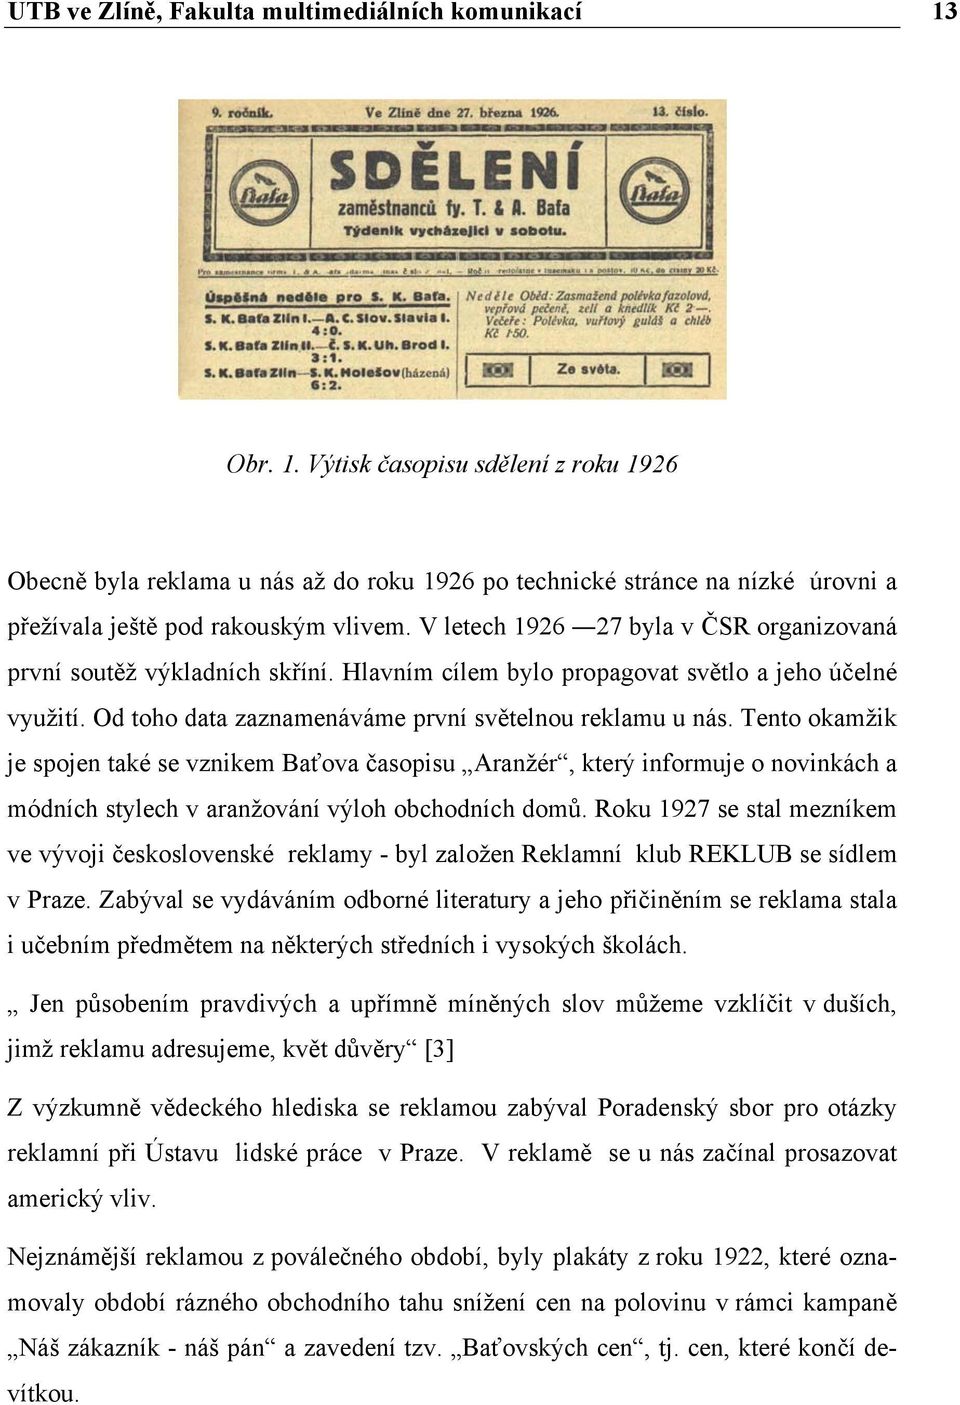 Propagace společnosti Baťa, historie a současnost. Šárka Grmanová - PDF  Free Download